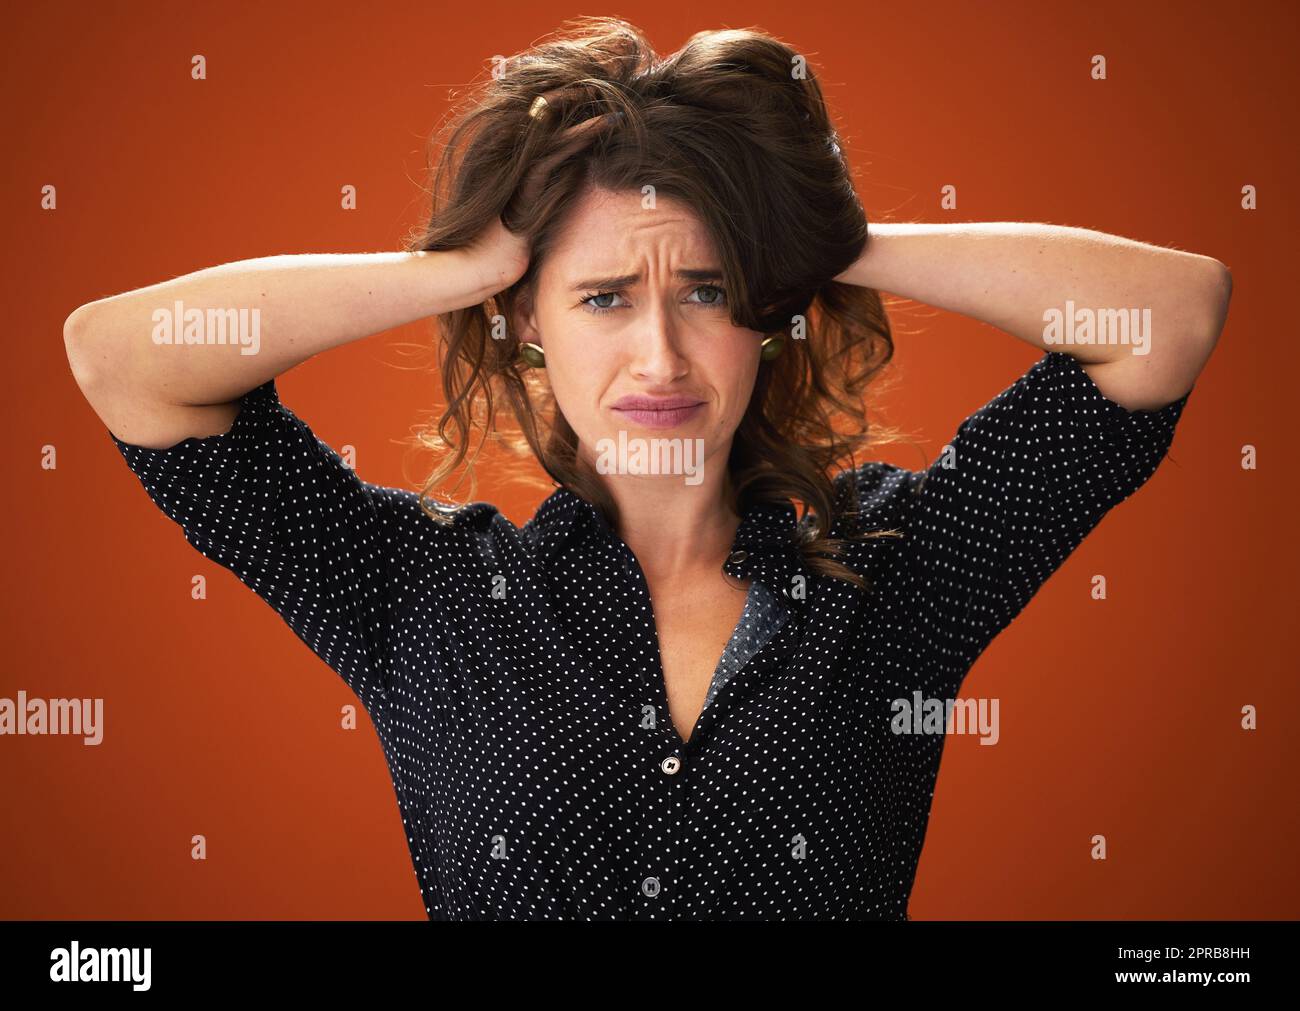 Schicken Sie Hilfe. Eine attraktive junge Frau, die allein vor rotem Hintergrund im Studio steht und ihr Haar berührt. Stockfoto